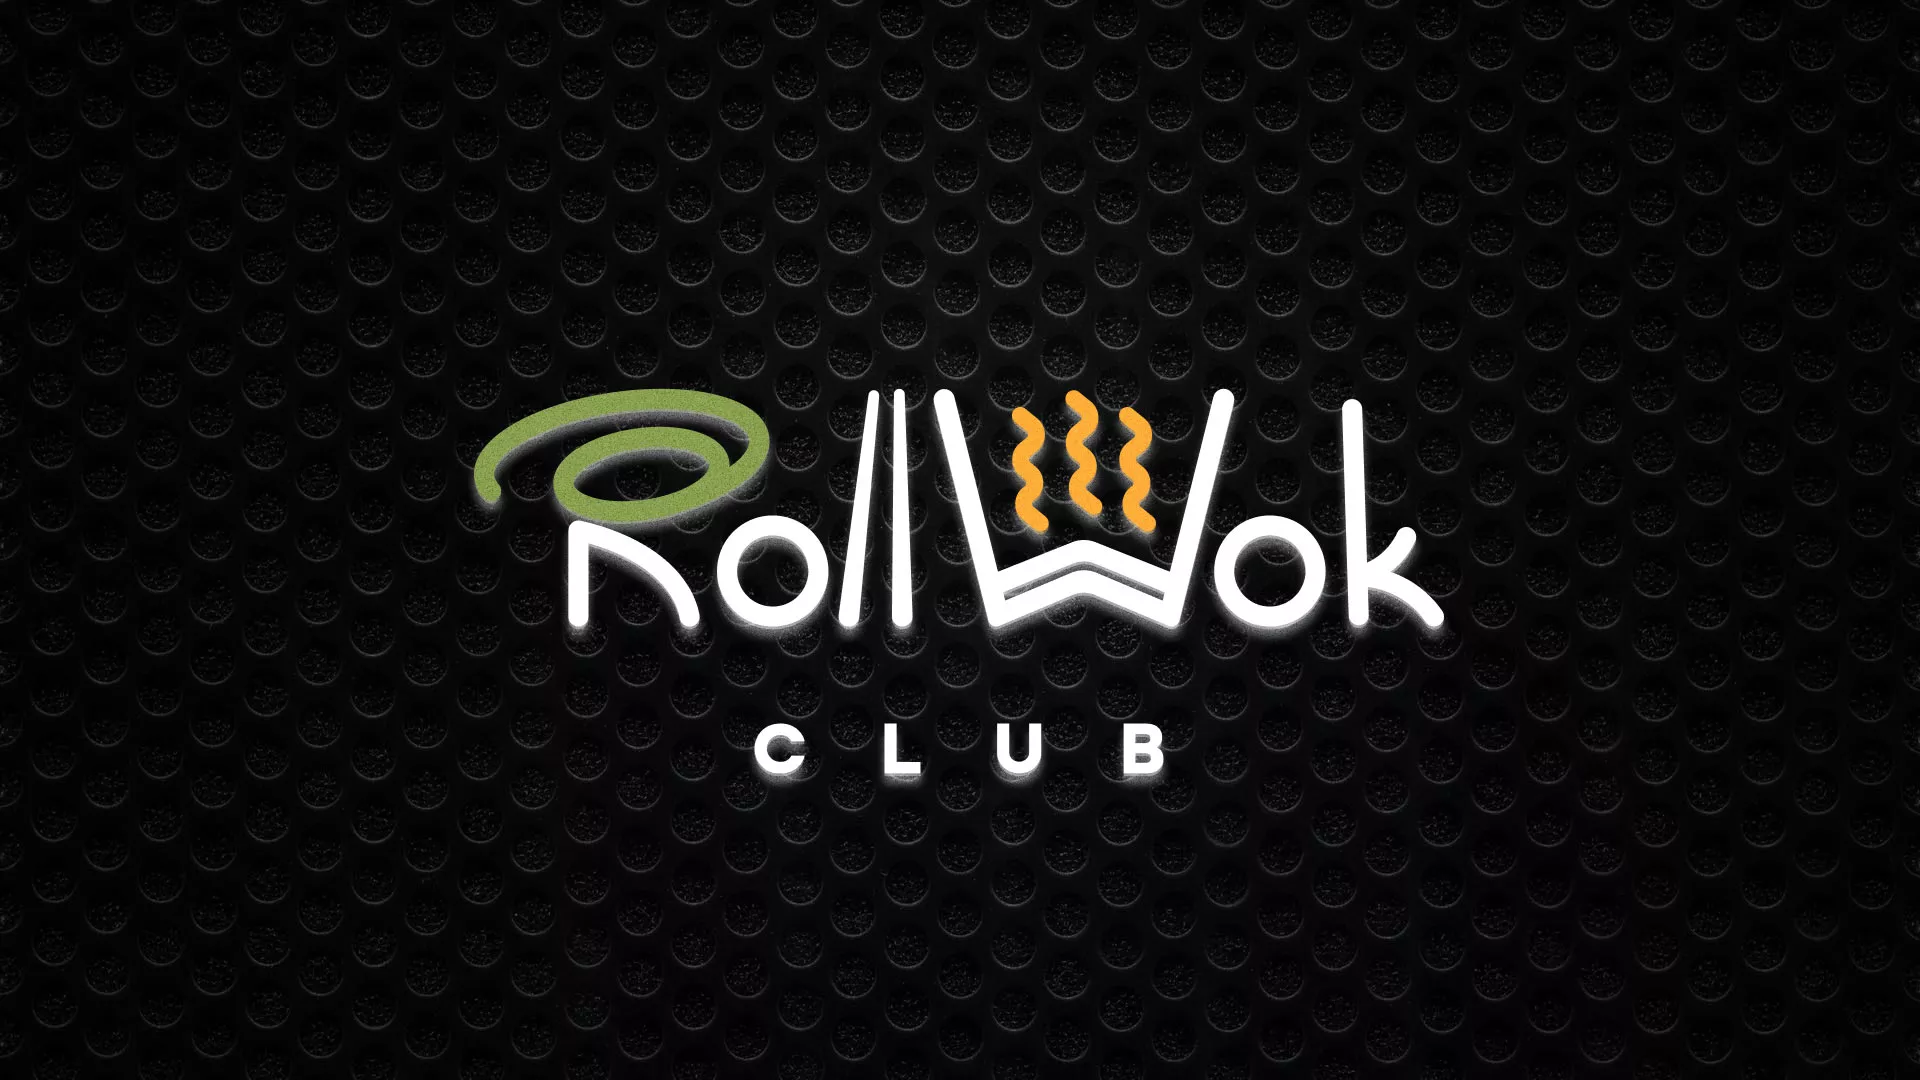 Брендирование торговых точек суши-бара «Roll Wok Club» в Шахунье